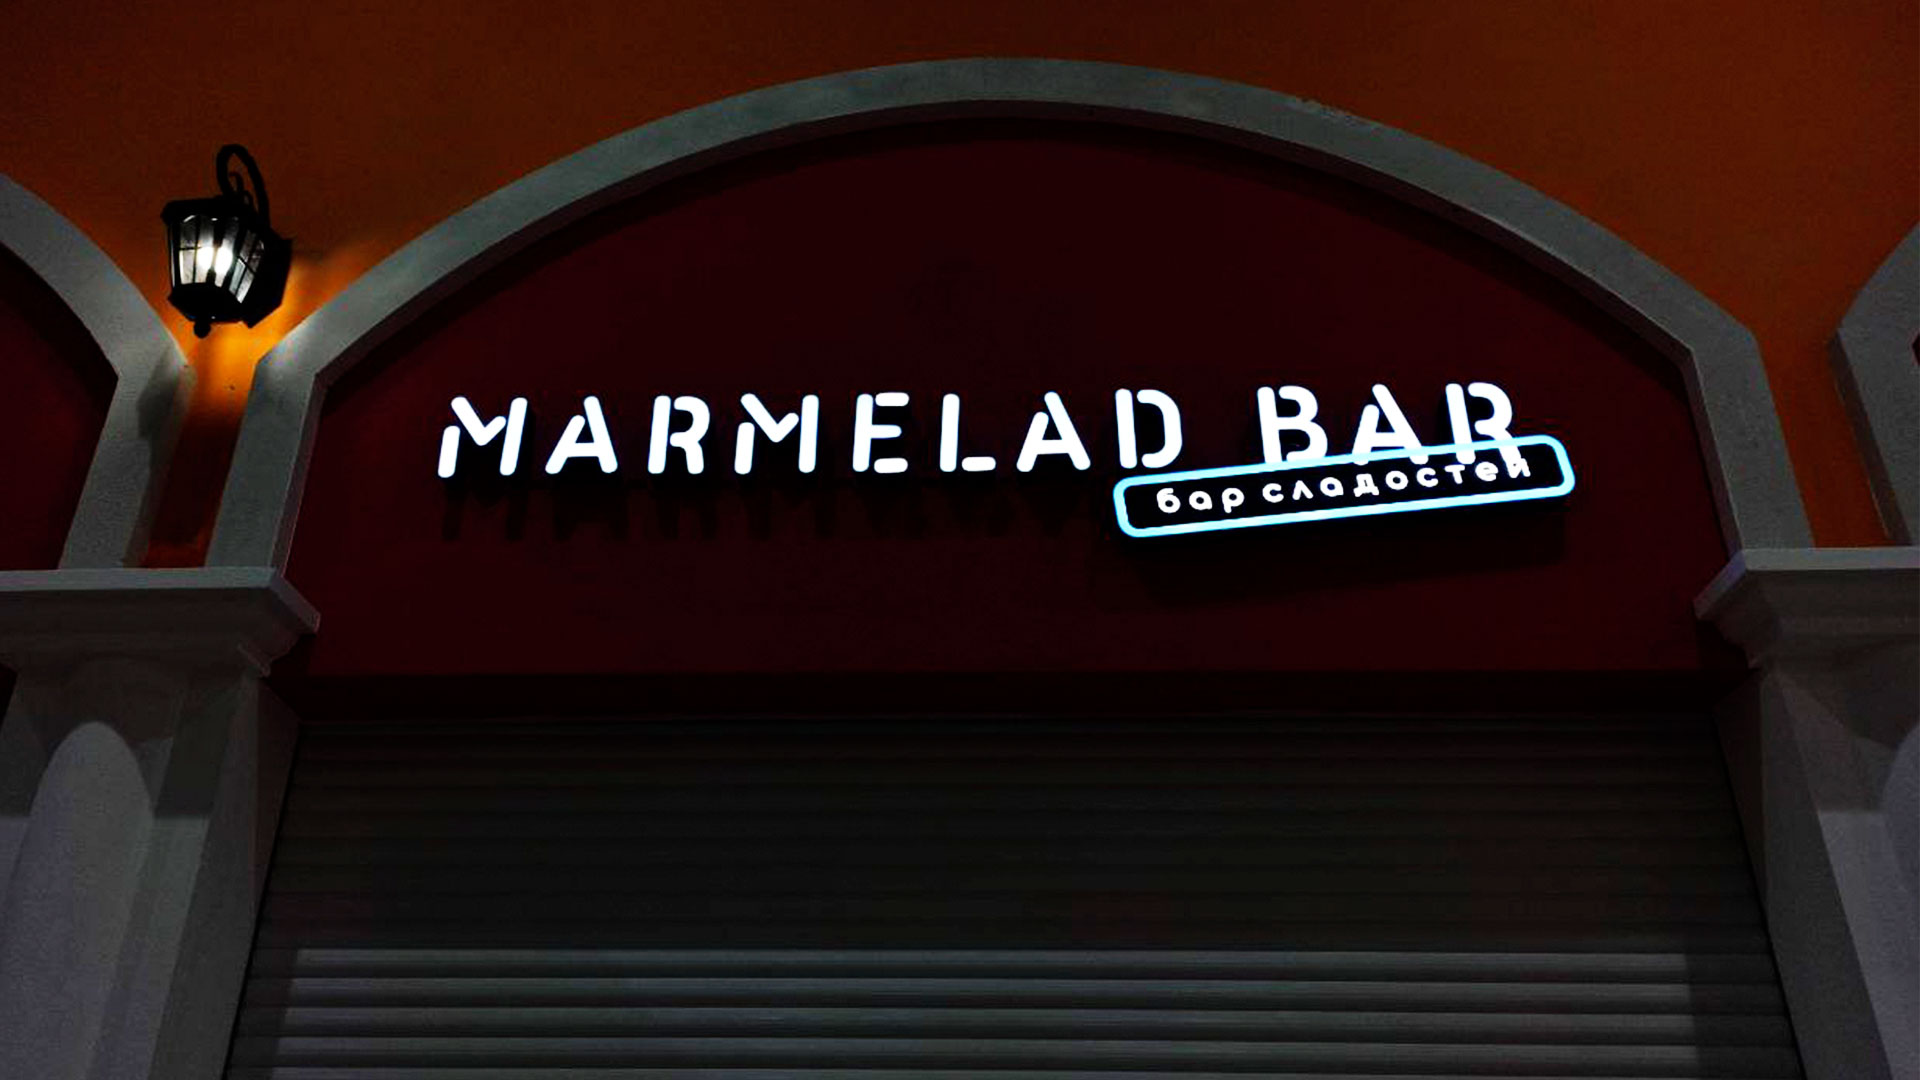 Производство рекламы “Marmelad bar”​